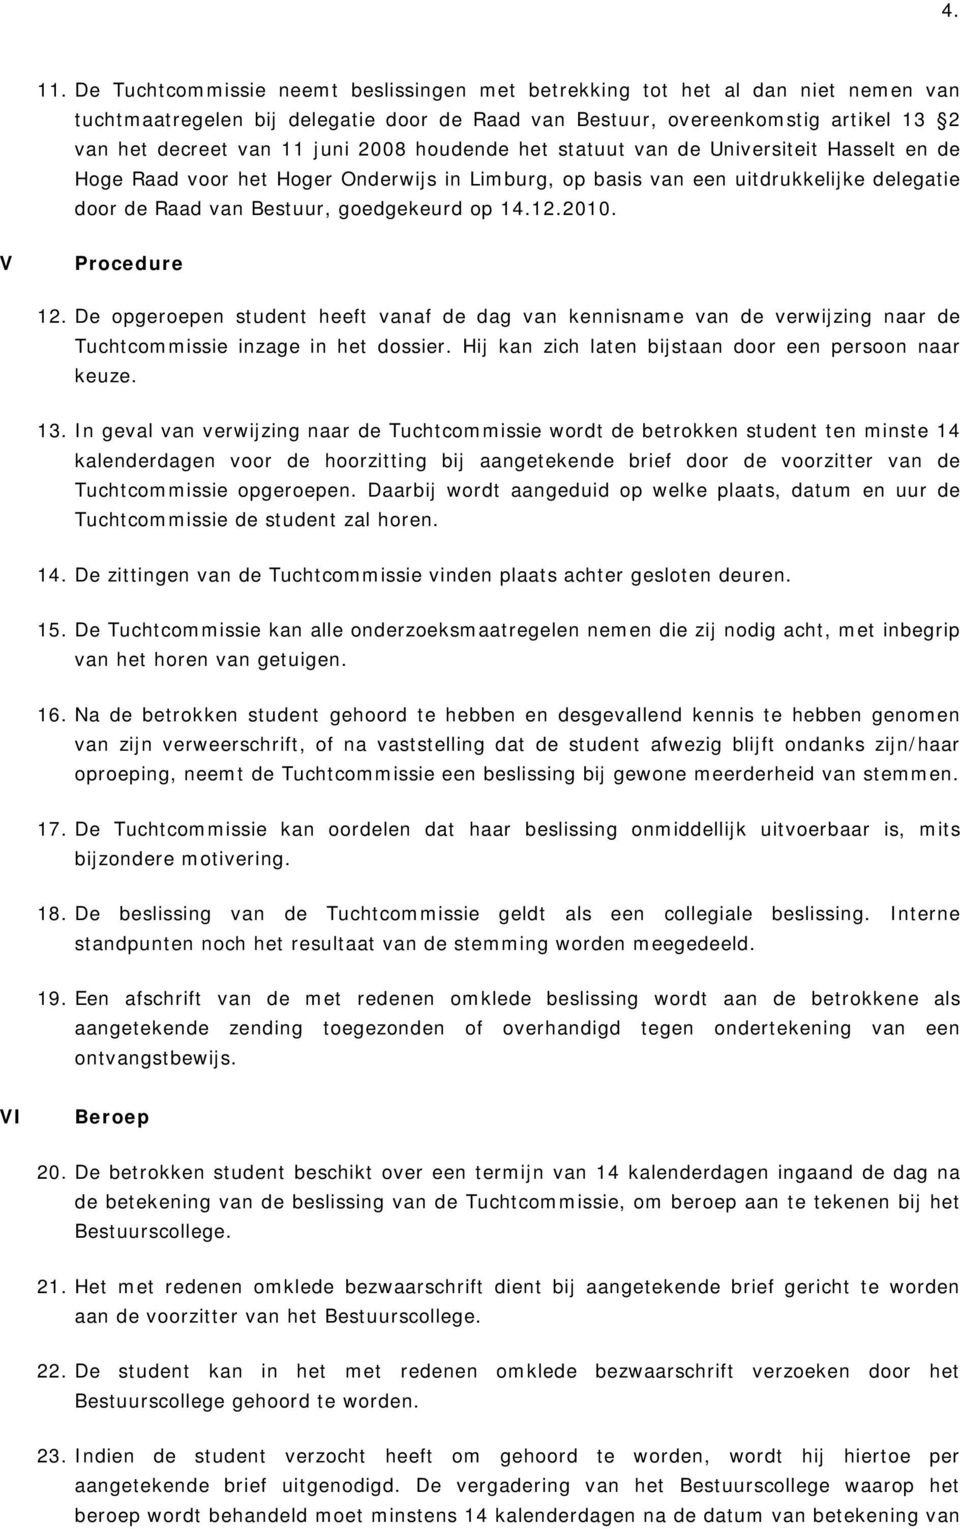 houdende het statuut van de Universiteit Hasselt en de Hoge Raad voor het Hoger Onderwijs in Limburg, op basis van een uitdrukkelijke delegatie door de Raad van Bestuur, goedgekeurd op 14.12.2010.